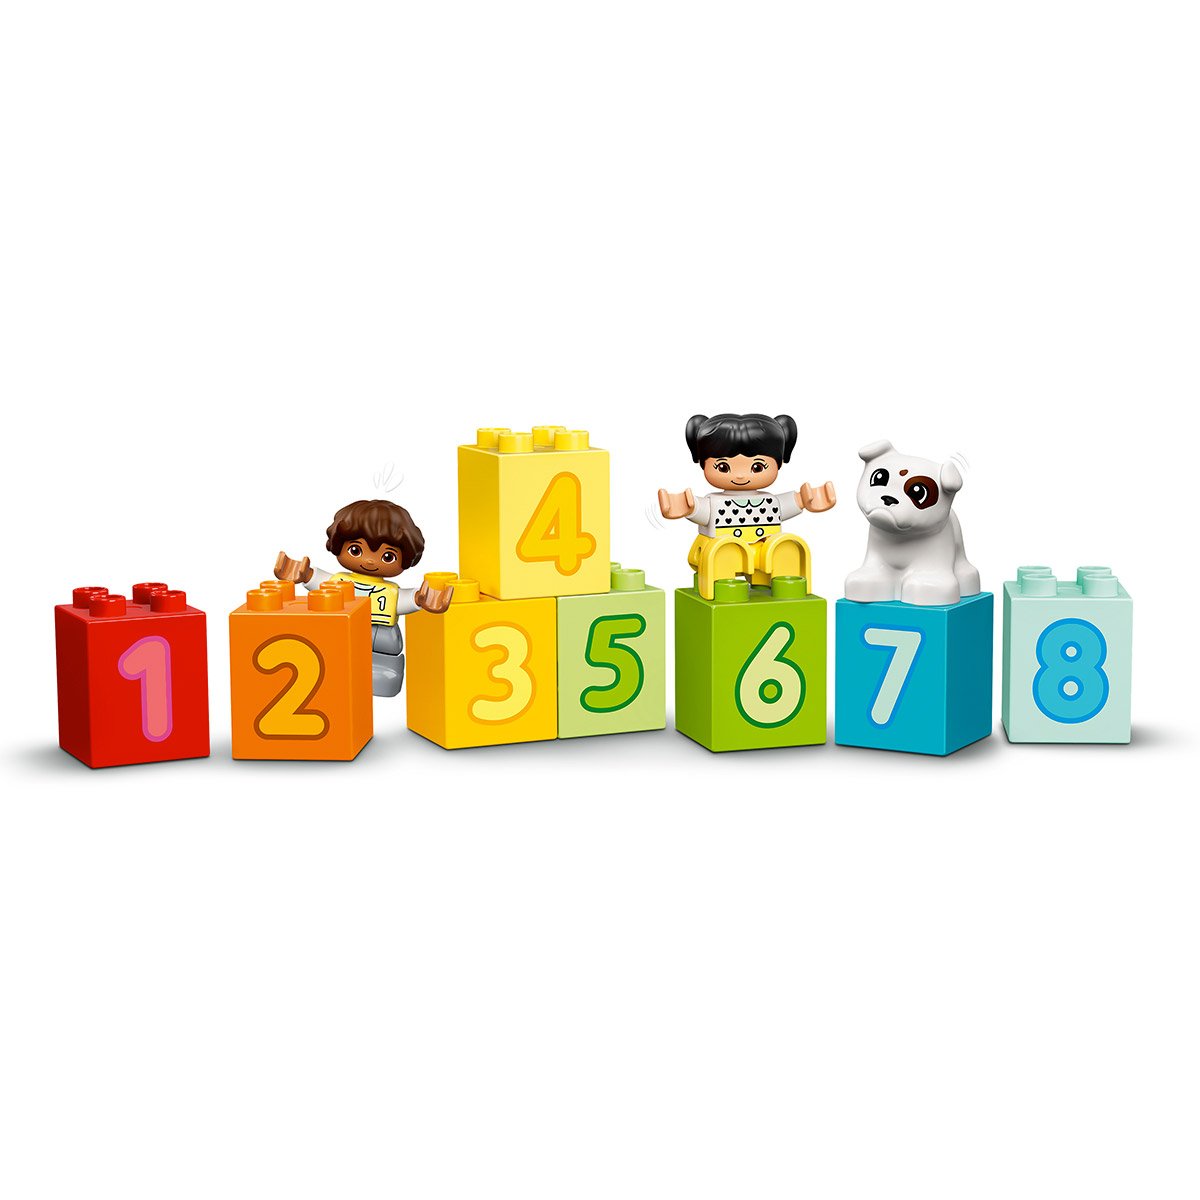 Le train des chiffres - Apprendre à compter - LEGO® DUPLO® Mes